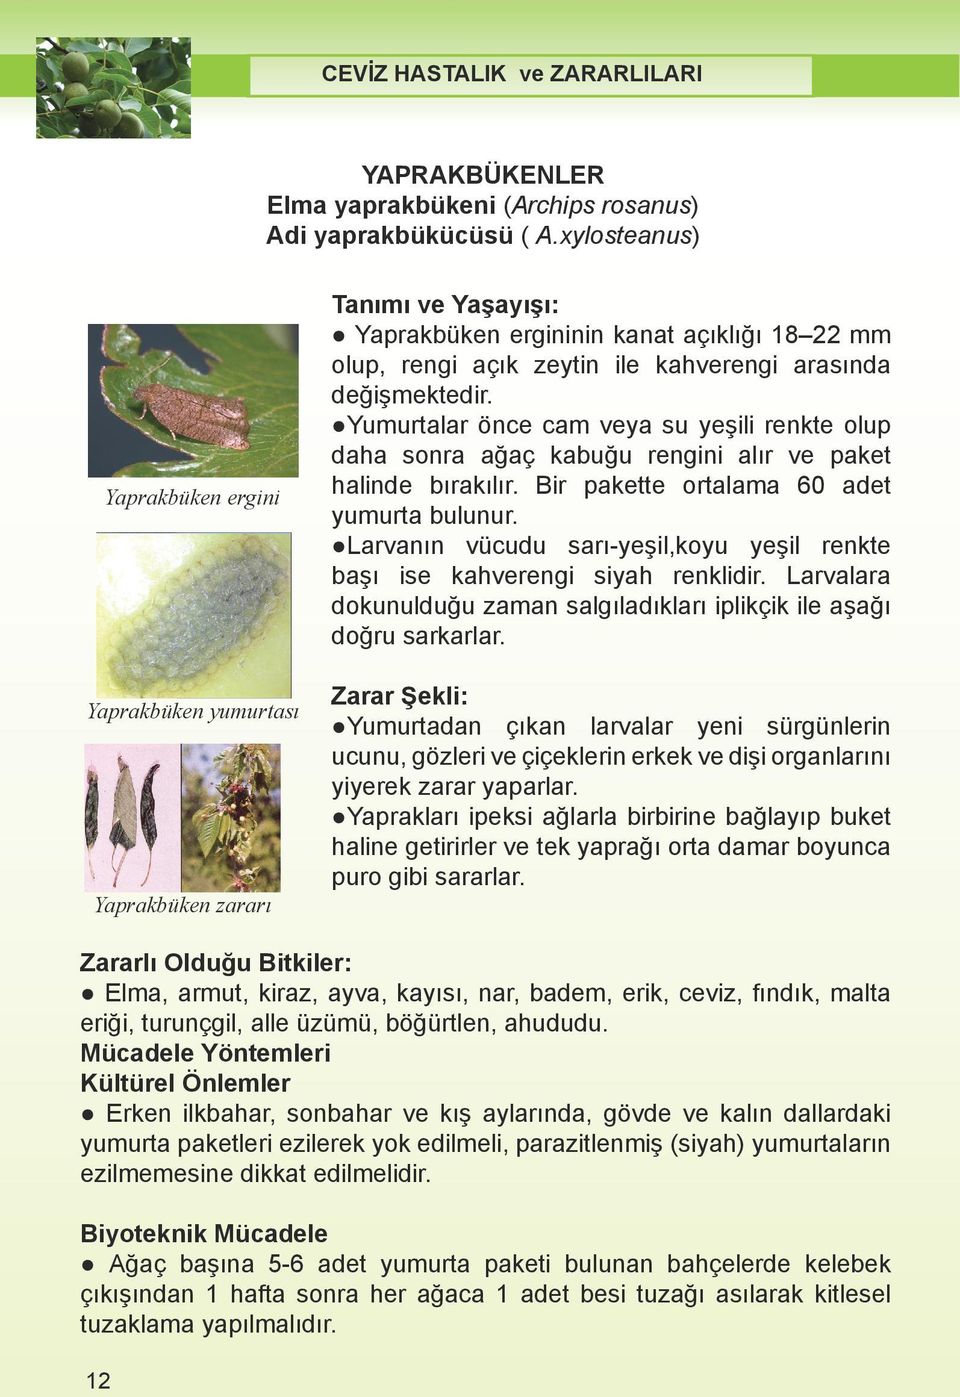 xylosteanus) rosanus) Adi Adi yaprakbükücüsü ( A.